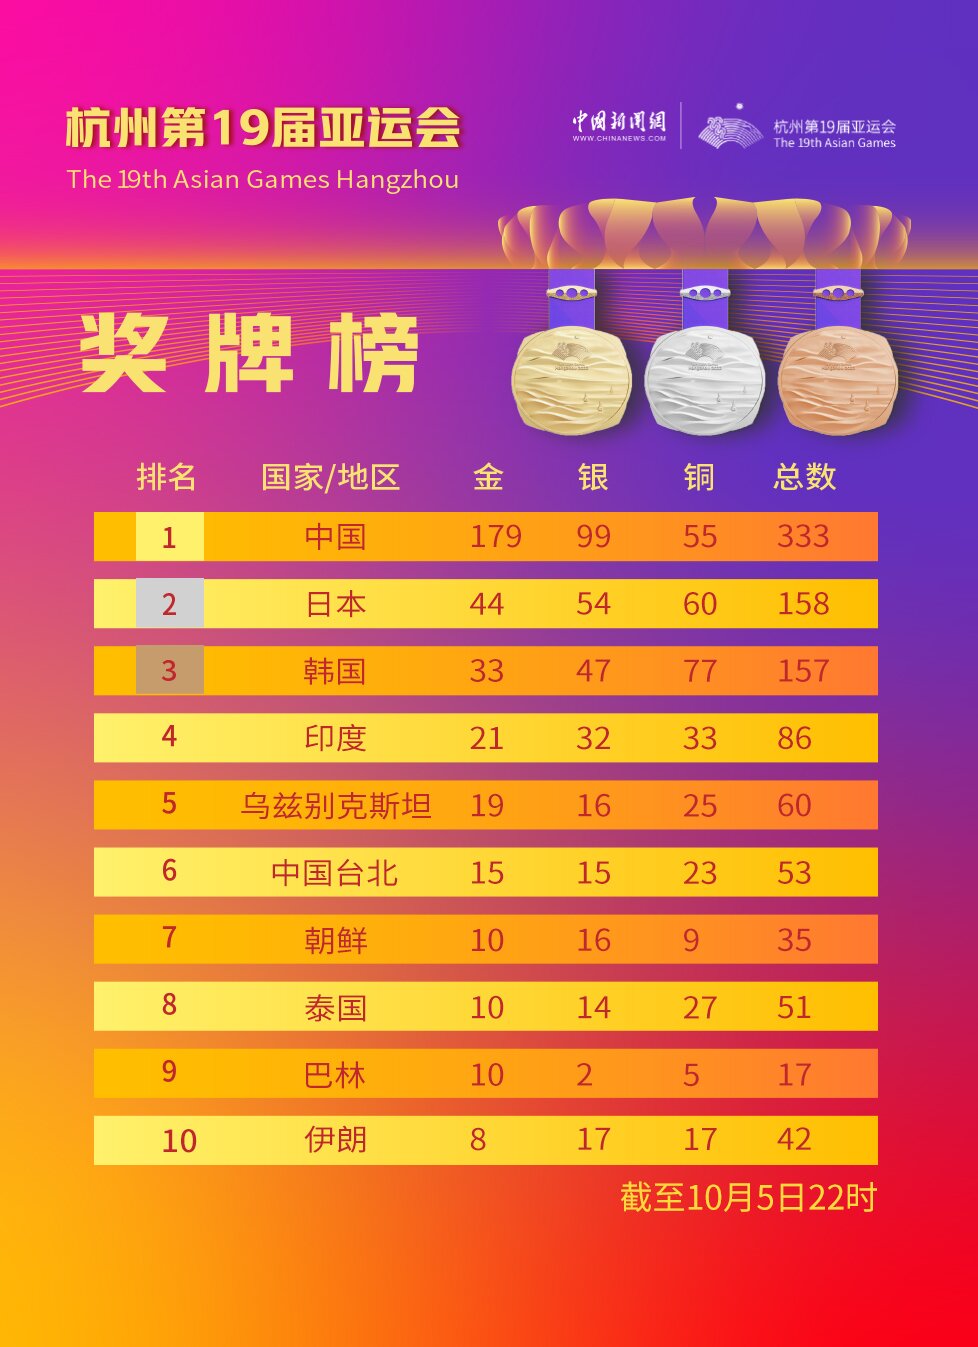 中国队金牌+8！奖牌总数日本队反超韩国队